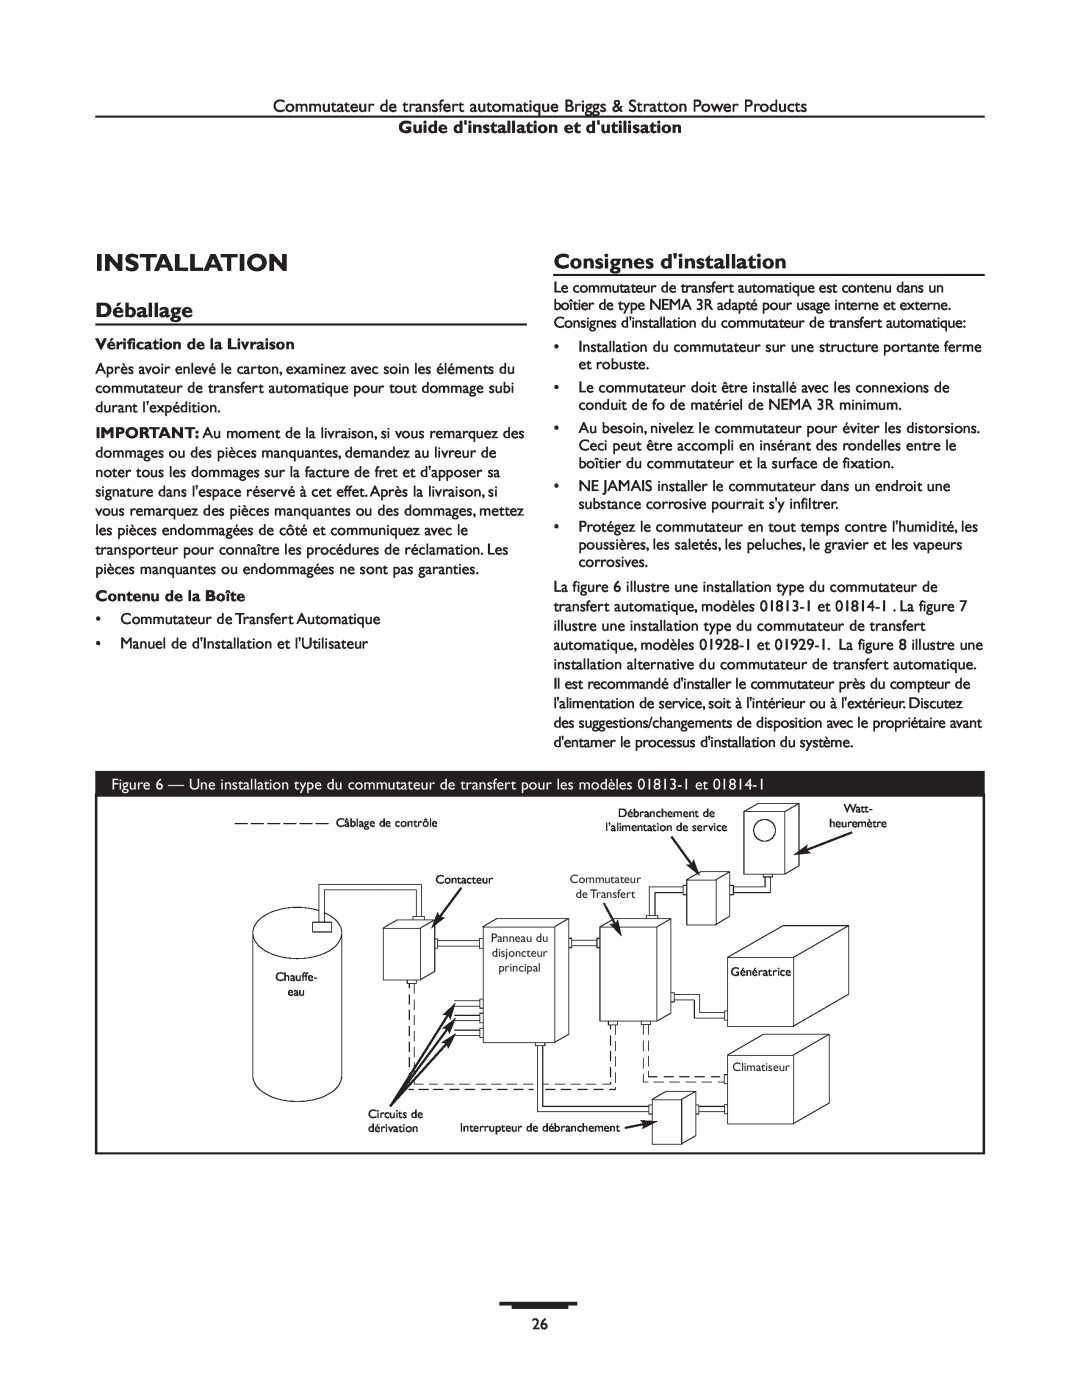 Briggs & Stratton 01929-1, 01928-1 Installation, Déballage, Consignes dinstallation, Guide dinstallation et dutilisation 